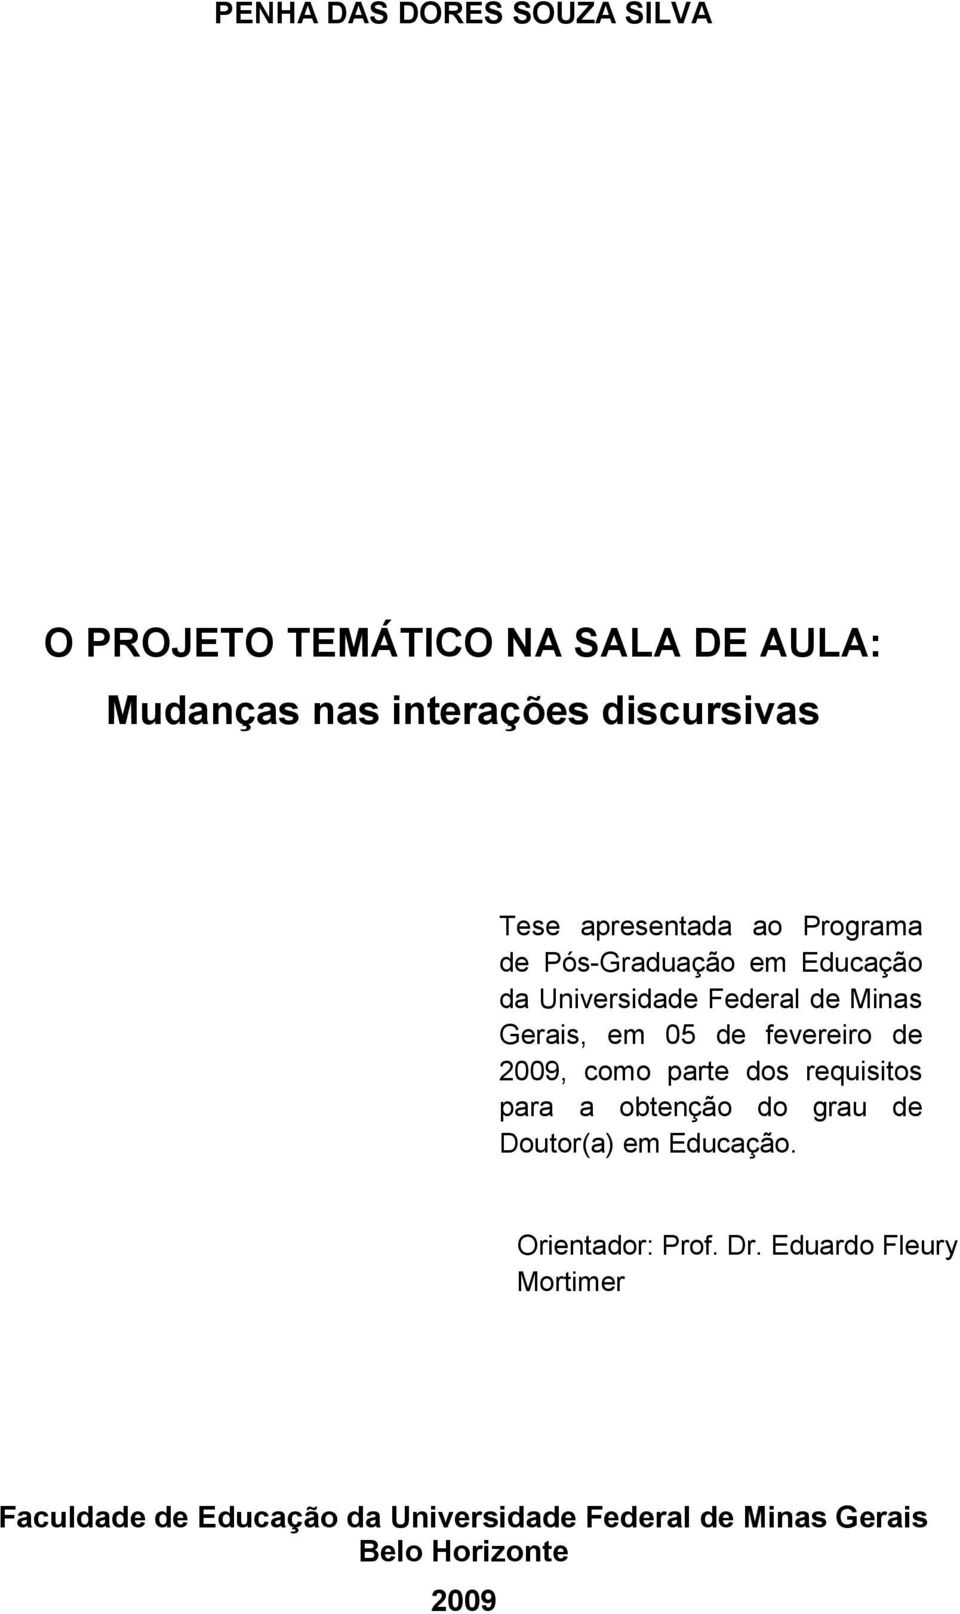 fevereiro de 2009, como parte dos requisitos para a obtenção do grau de Doutor(a) em Educação.